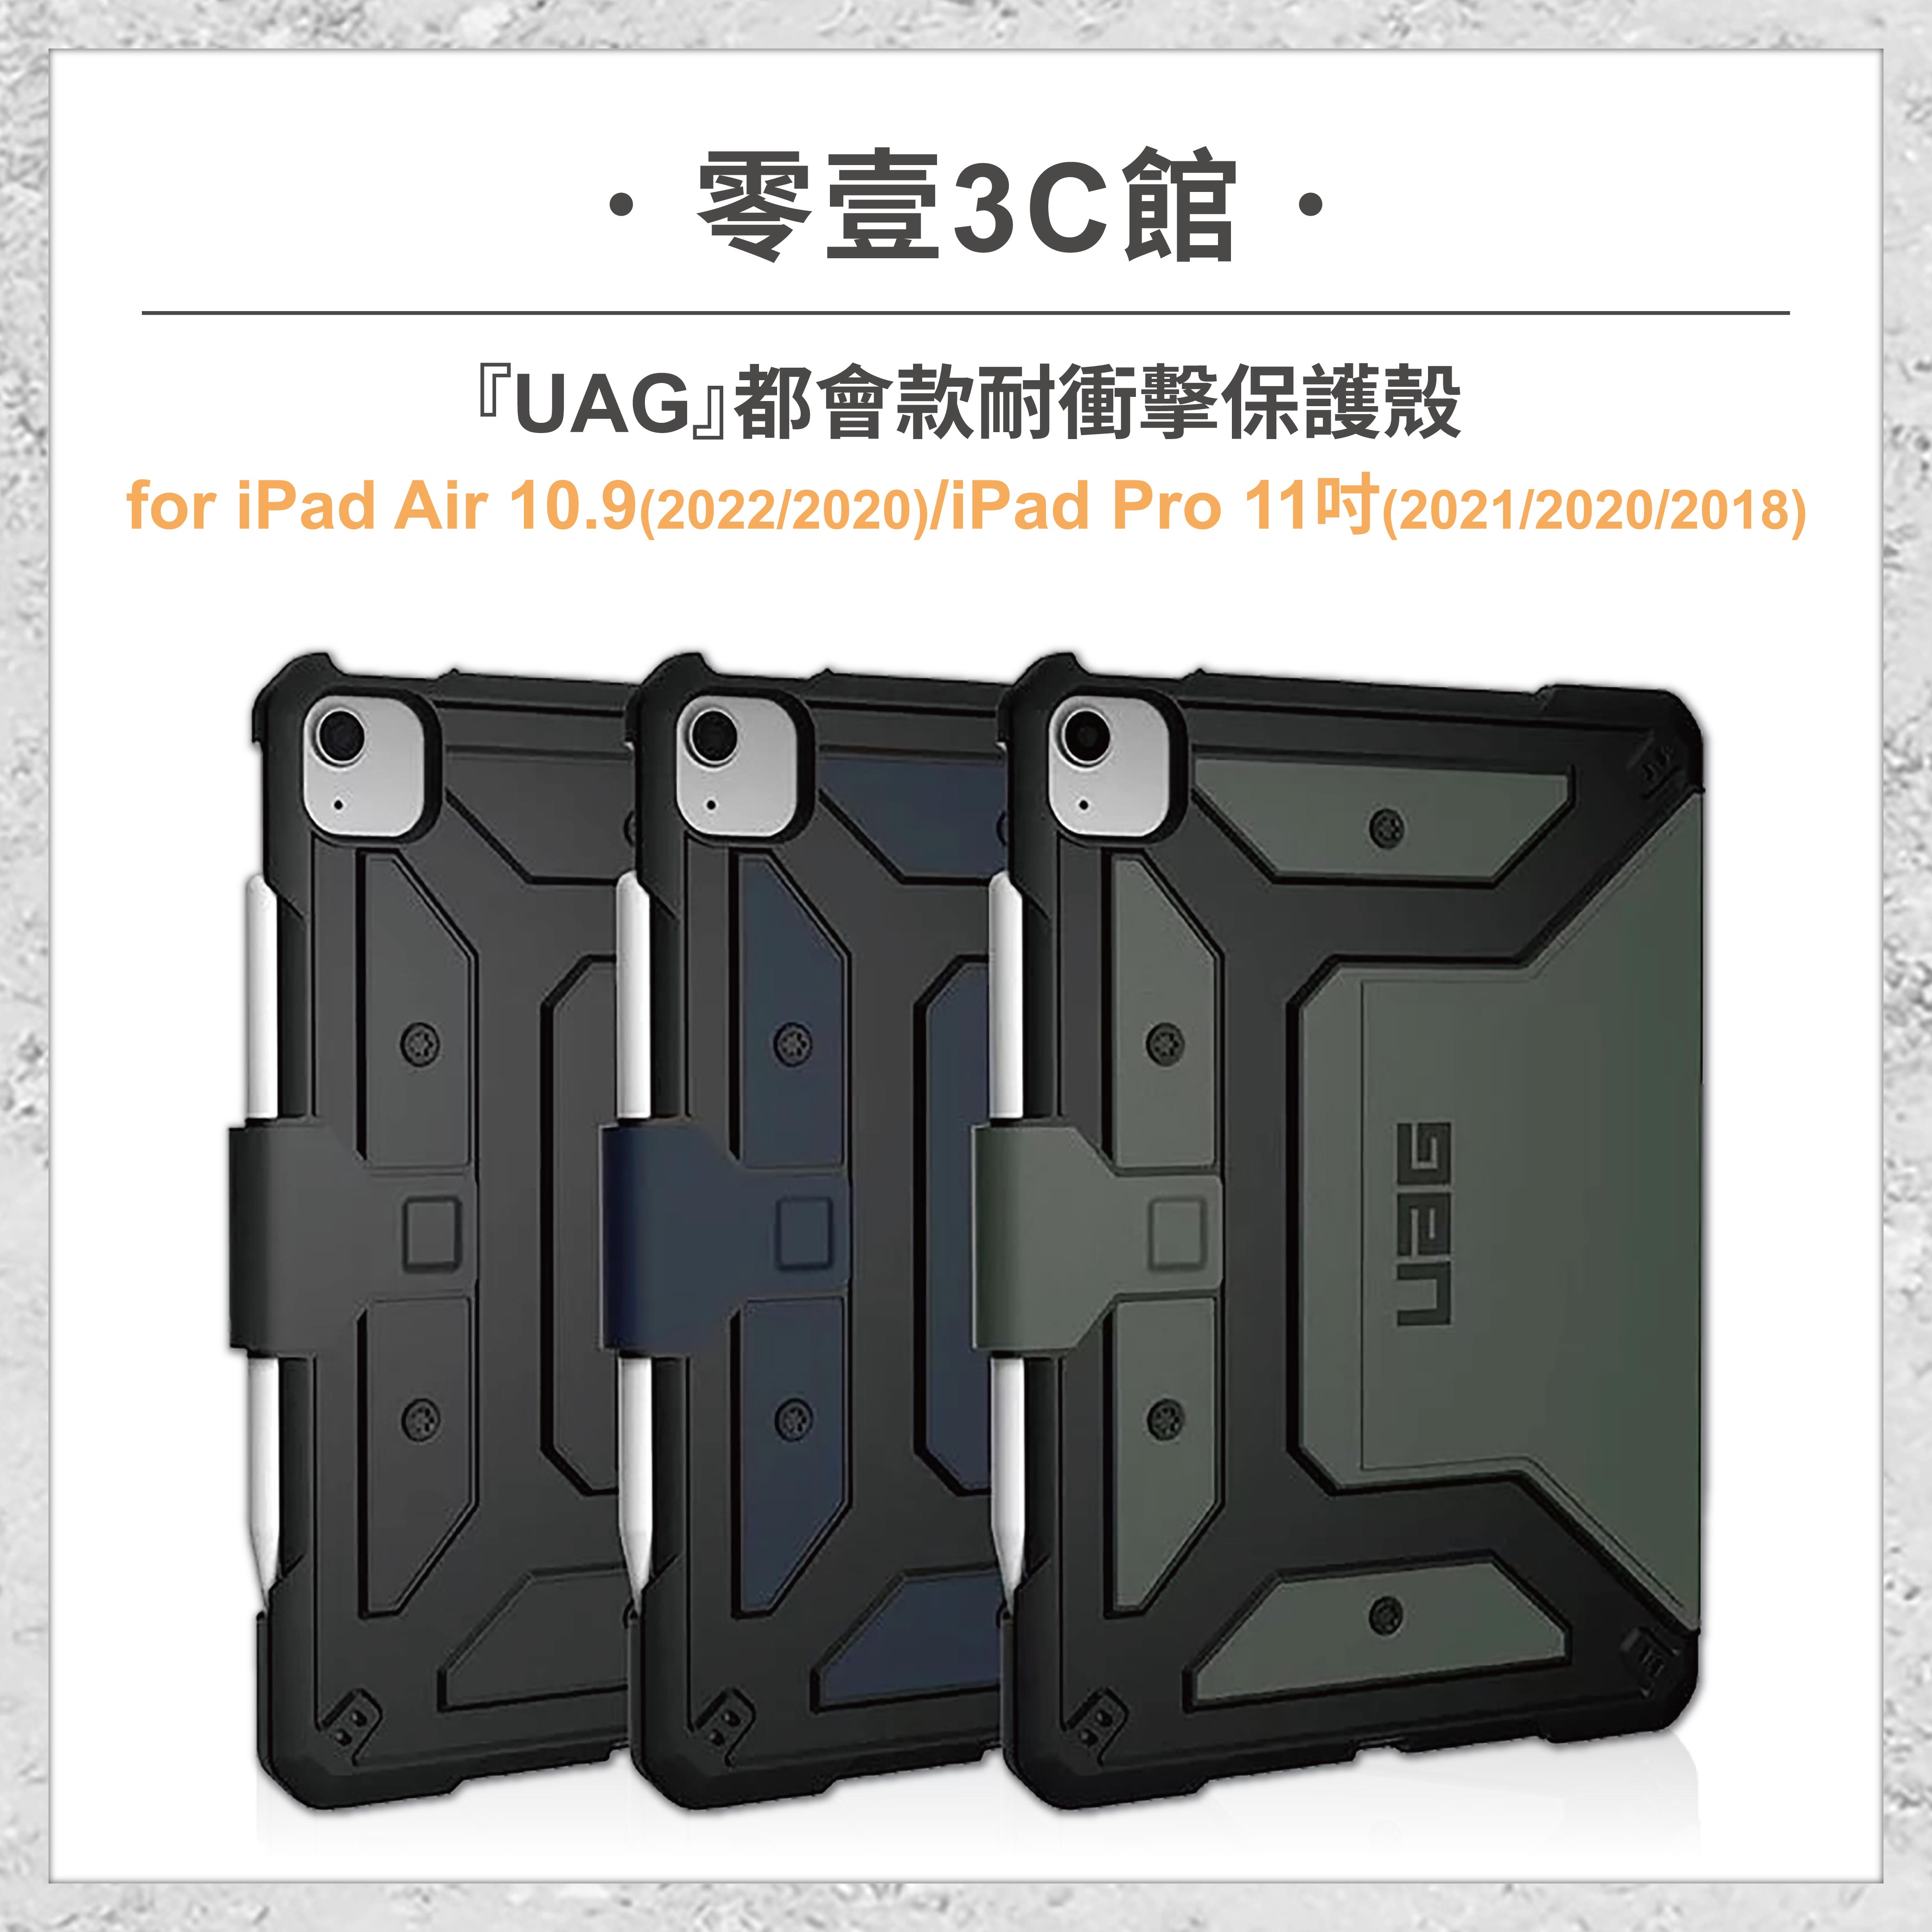 『UAG』都會款耐衝擊保護殼 for iPad Air 10.9吋/iPad Pro 11吋 平板保護殼 保護殼